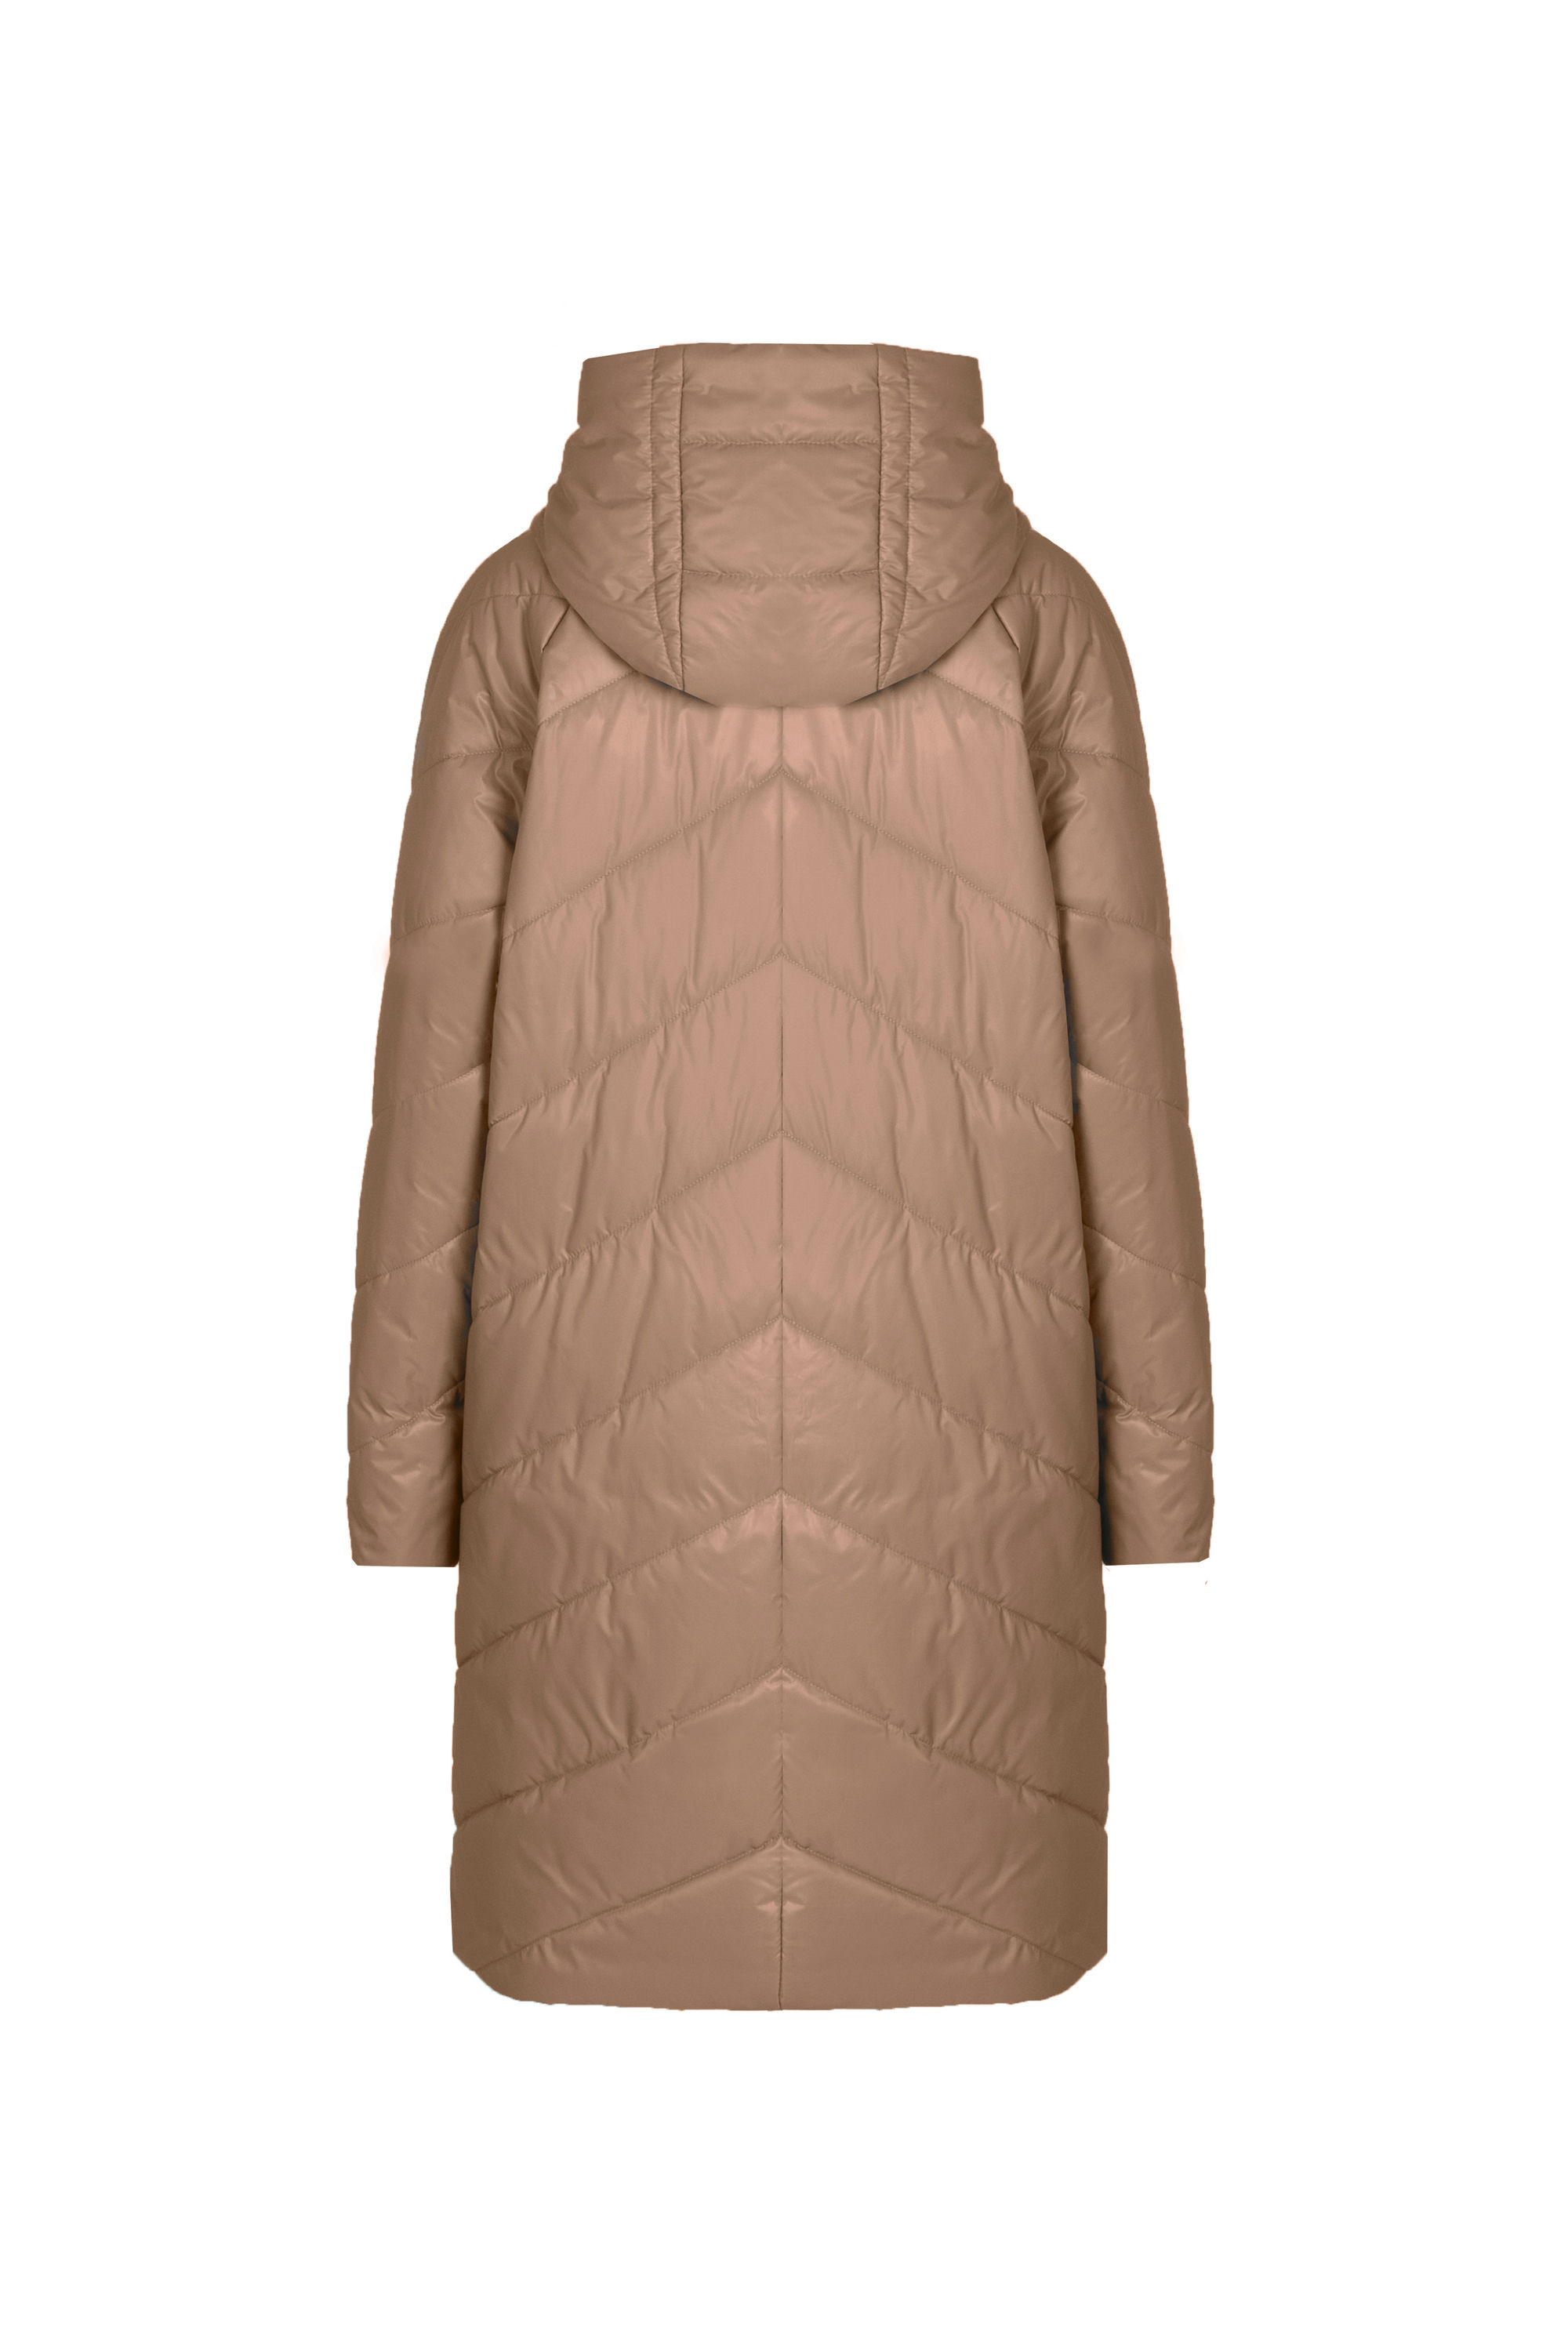 Пальто женское плащевое утепленное 5-12649-1. Фото 3.